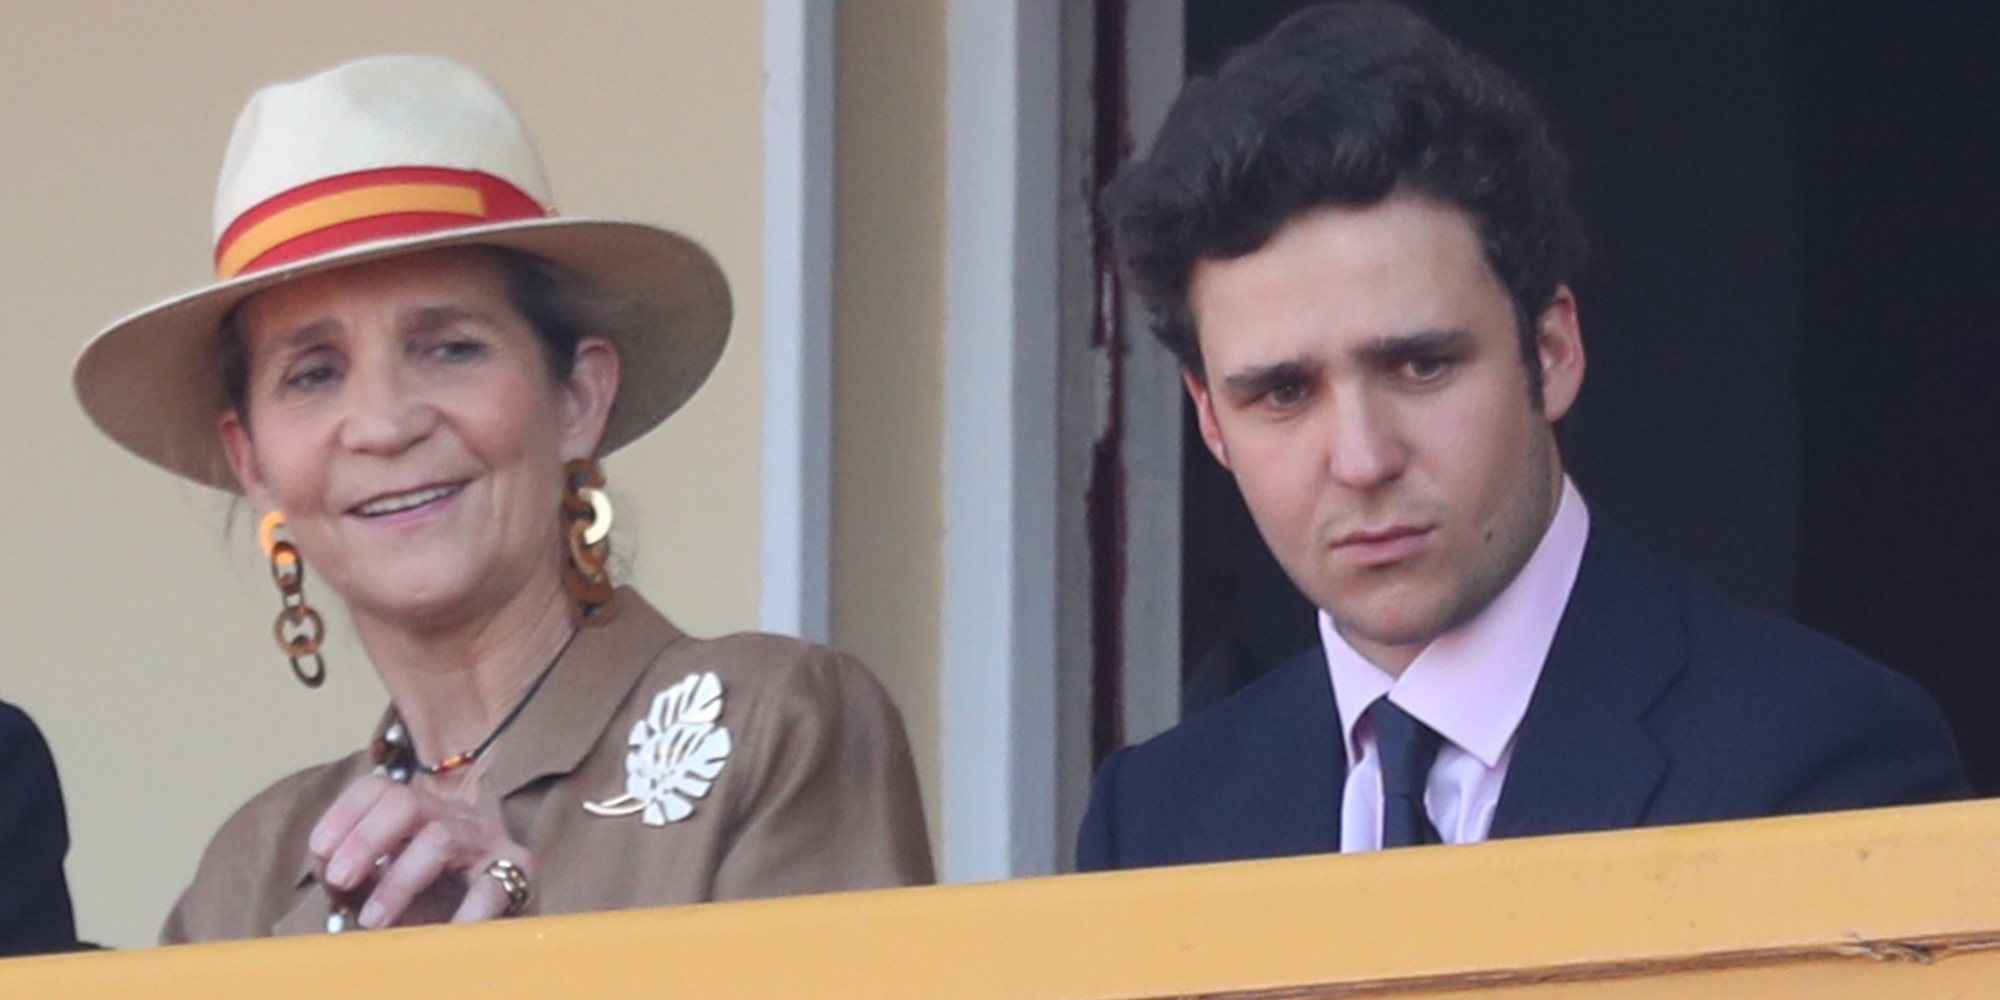 La preocupación de la Infanta Elena tras salir a la luz el supuesto affaire entre Froilán y Miriam Saavedra